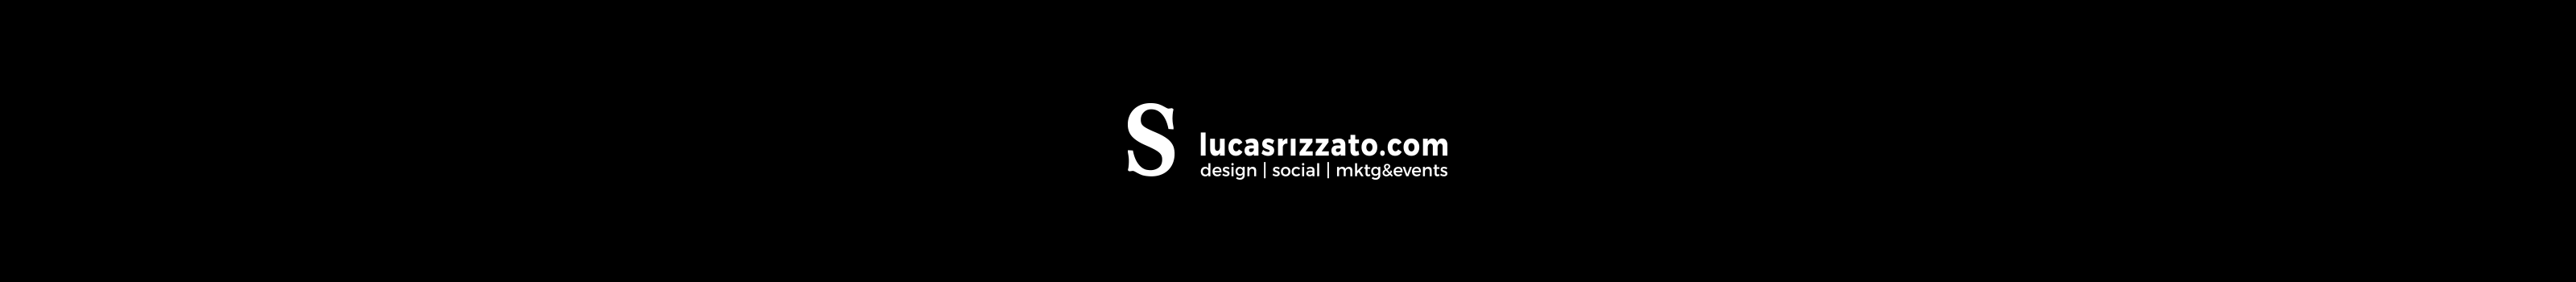 Lucas Rizzato's profile banner